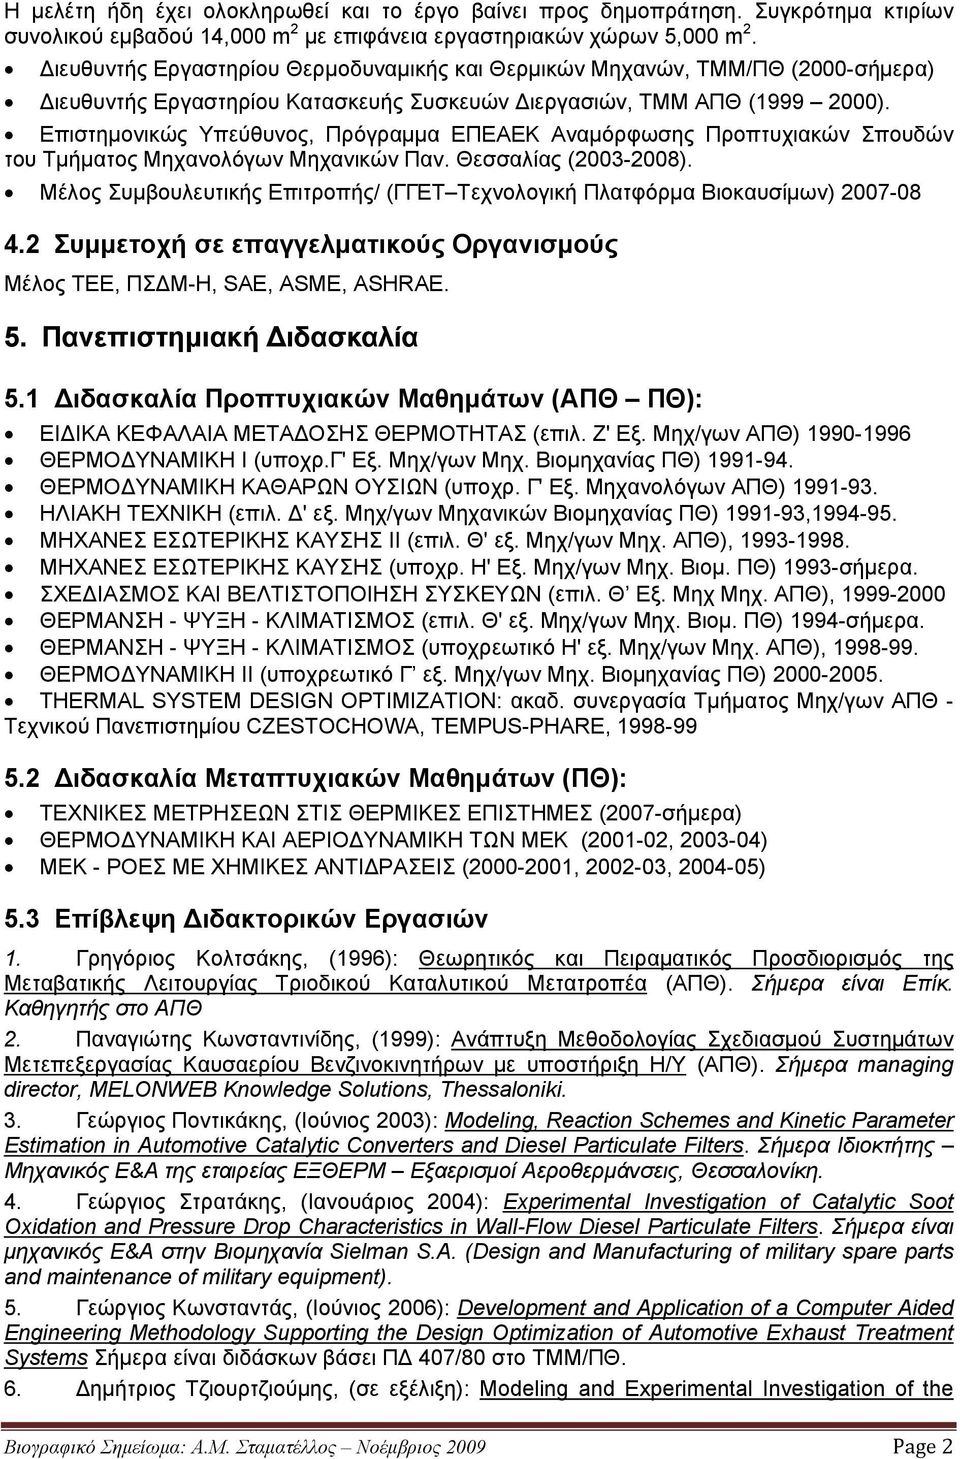 Επιστημονικώς Υπεύθυνος, Πρόγραμμα ΕΠΕΑΕΚ Αναμόρφωσης Προπτυχιακών Σπουδών του Τμήματος Μηχανολόγων Μηχανικών Παν. Θεσσαλίας (2003-2008).